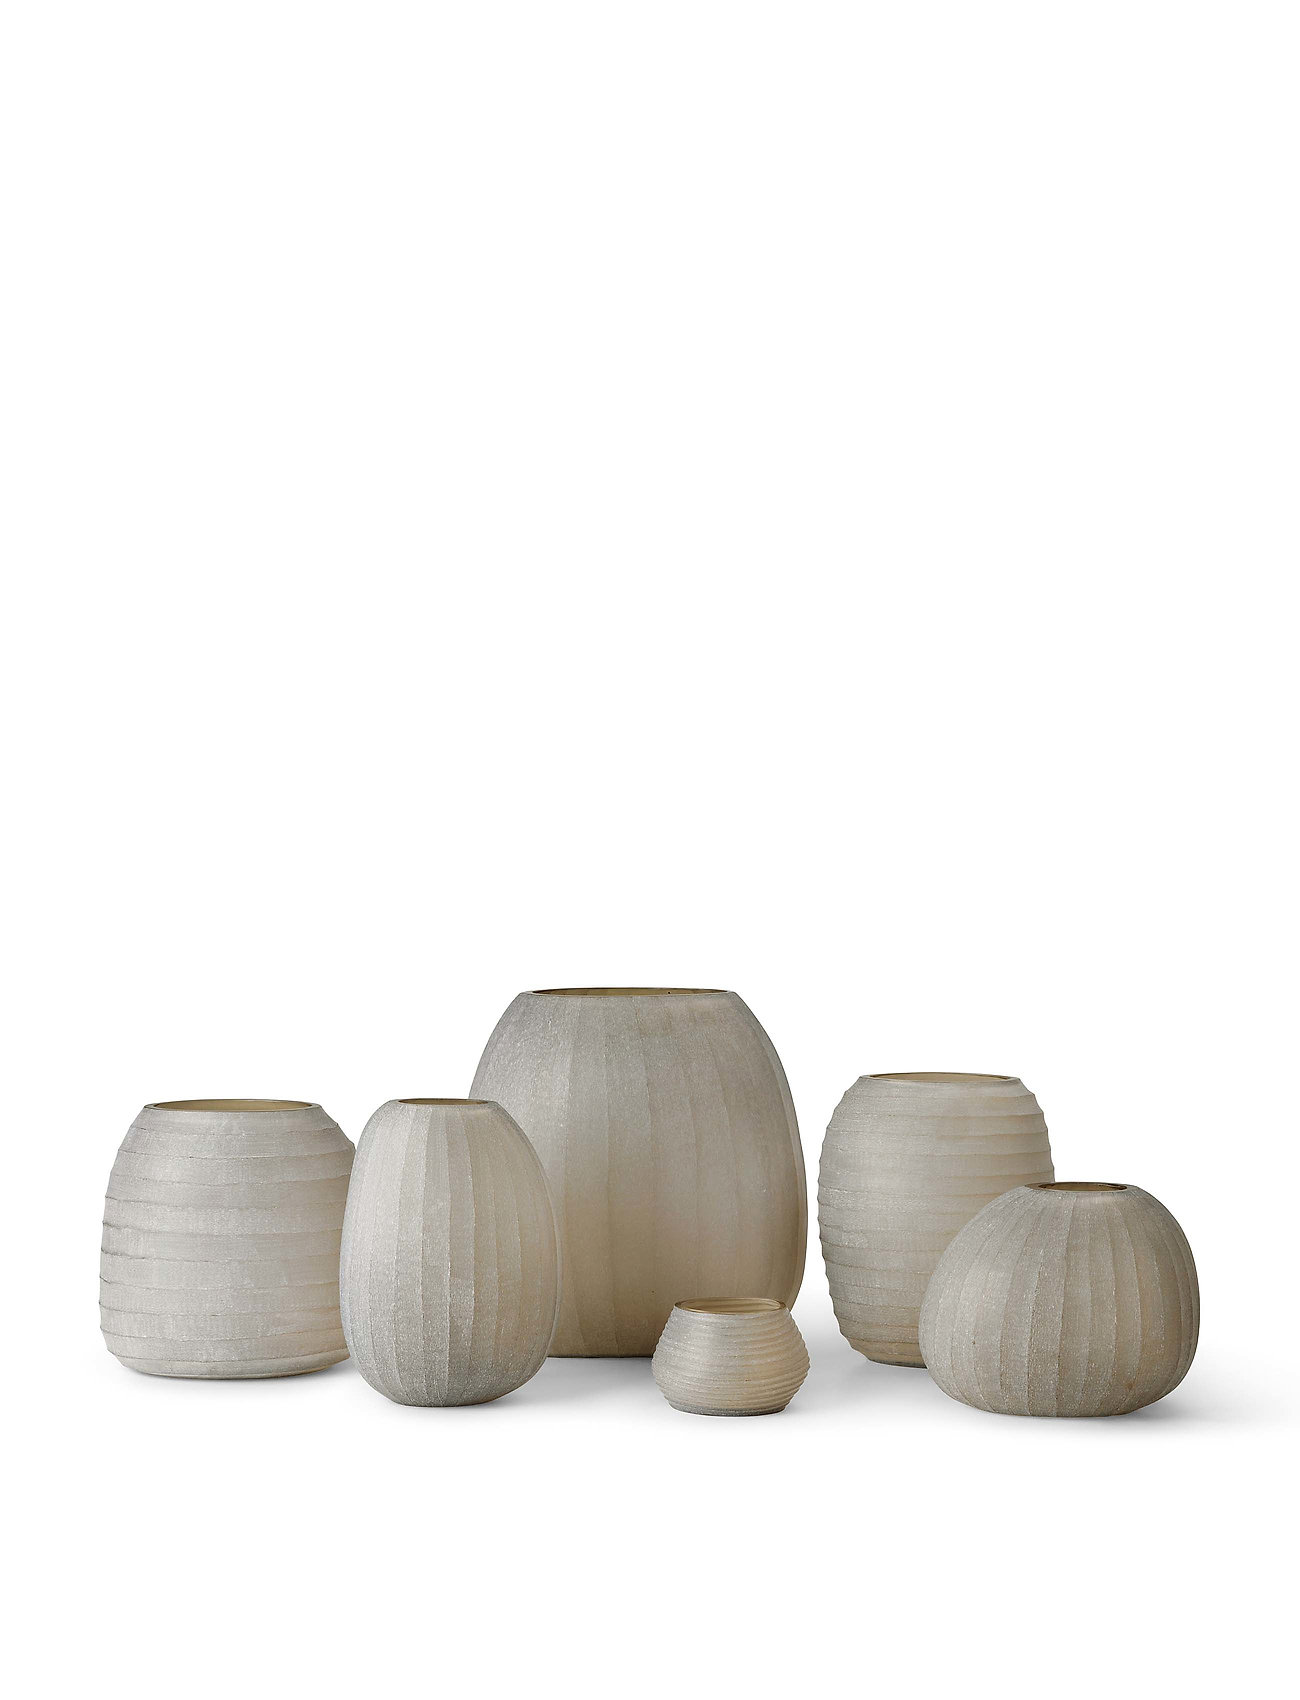 Nordstjerne - Organic candle holder - small vases - sand - 1